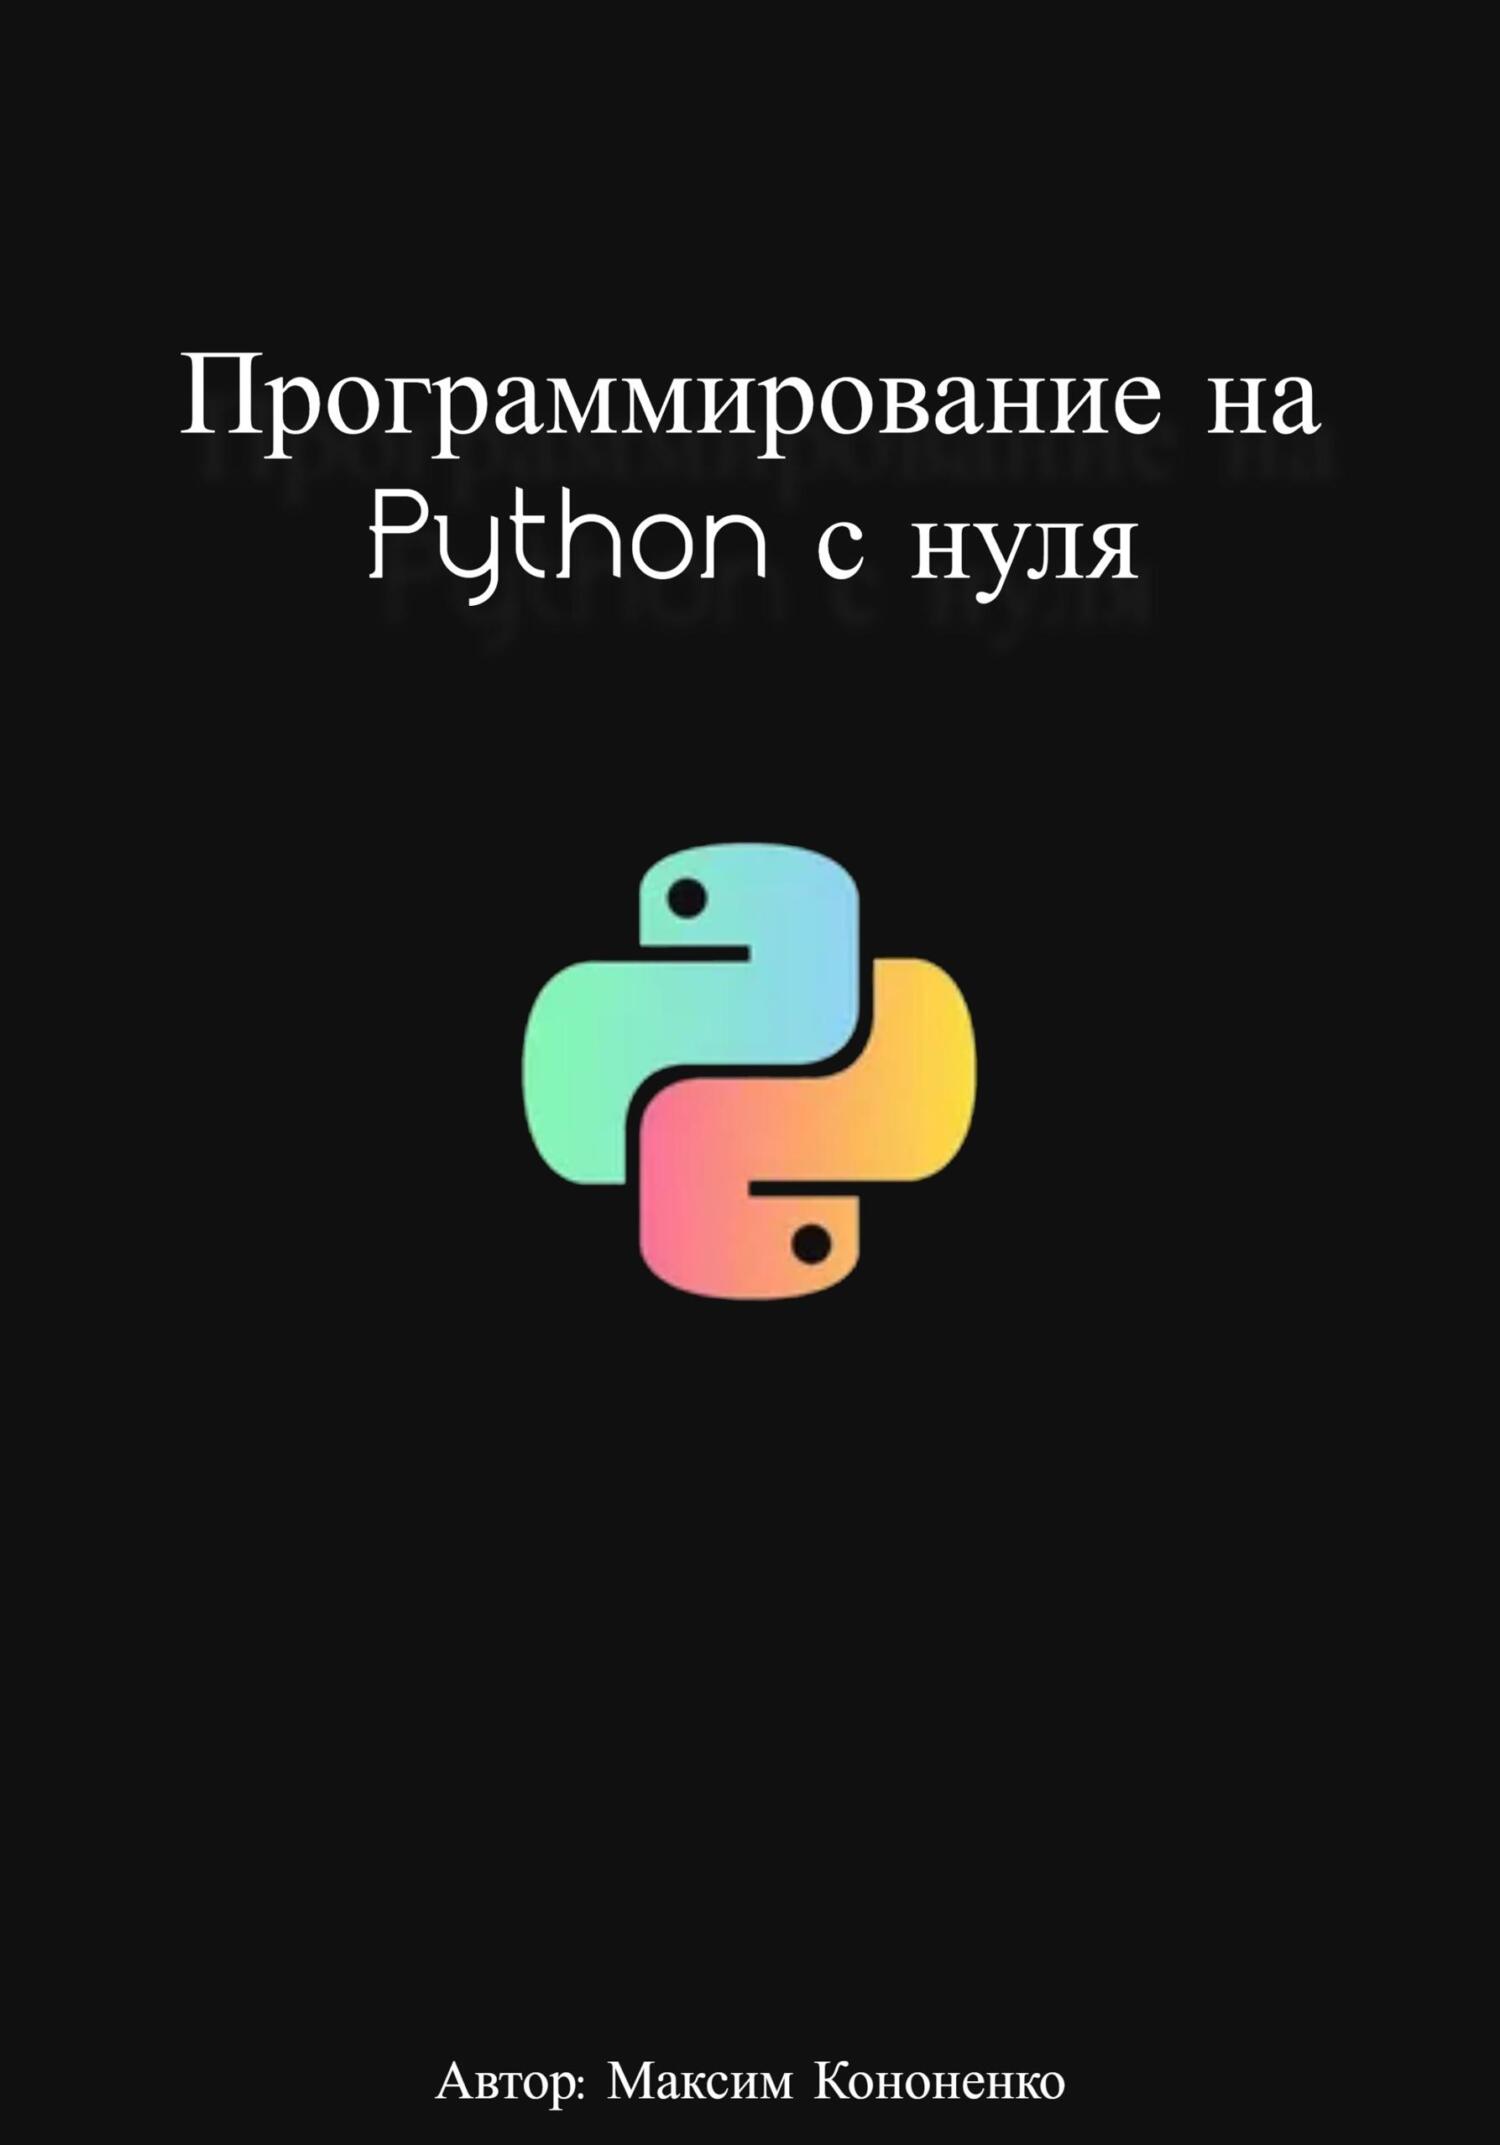 Программирование на Python с нуля - Максим Кононенко